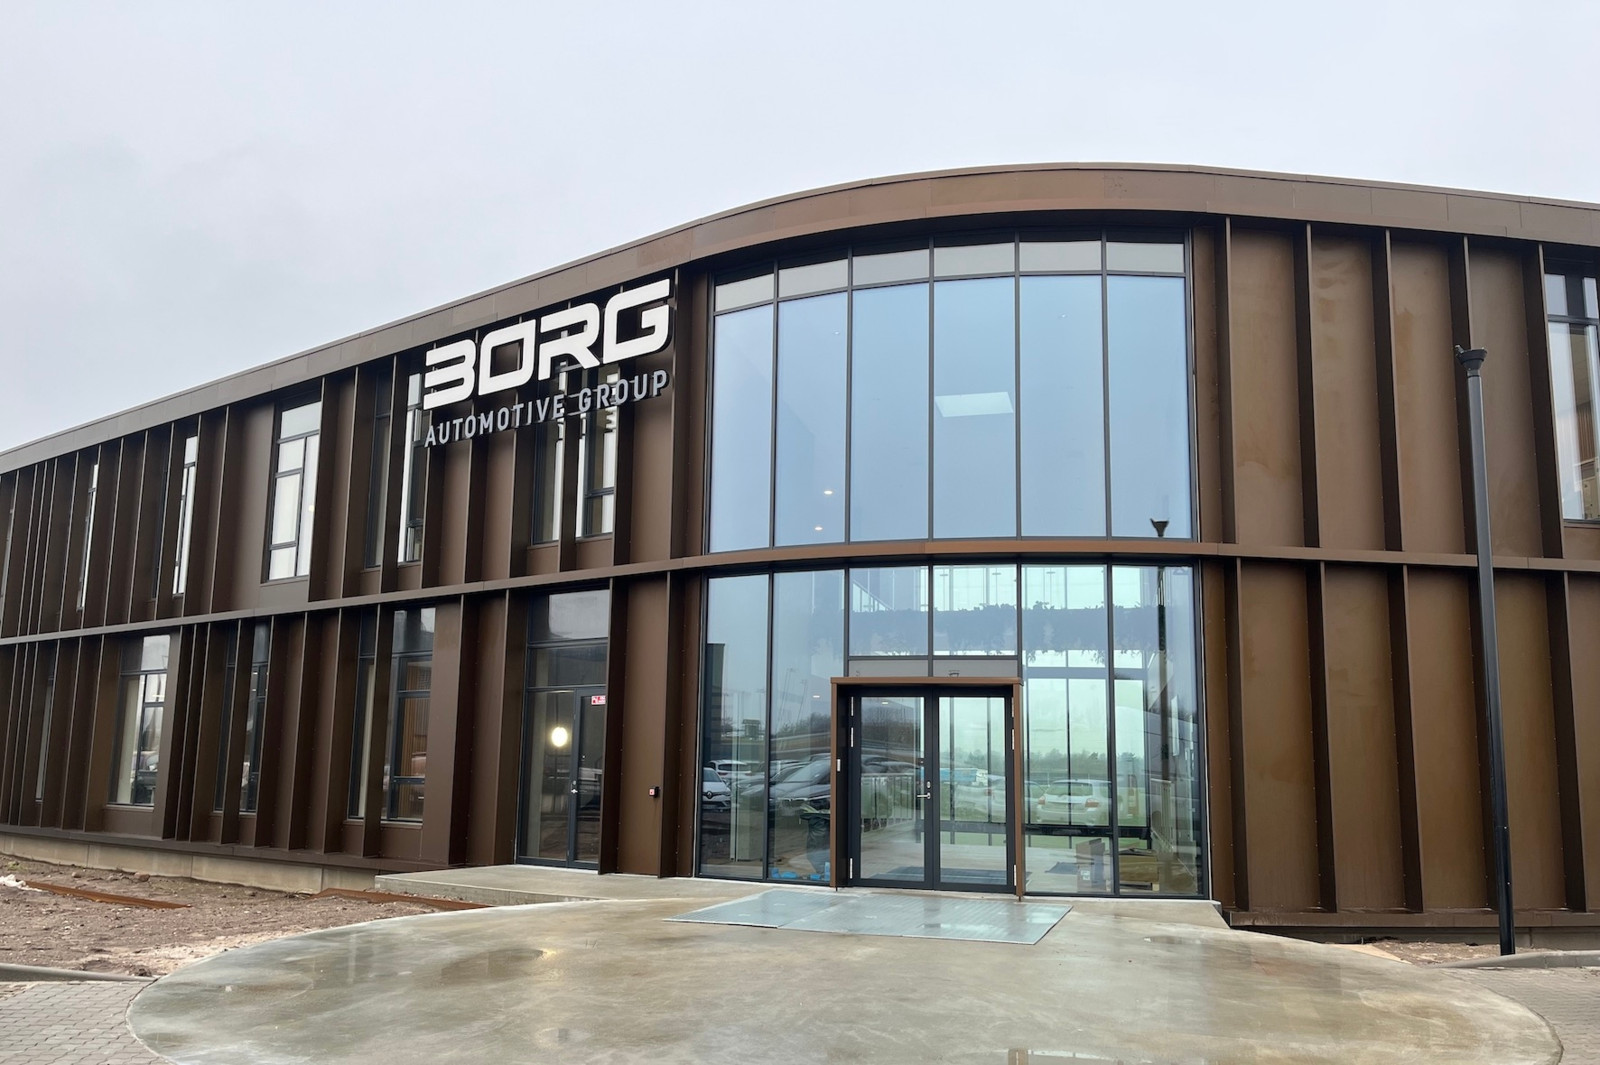 In puncto Gebäudetechnik und Energieeffizienz steht die neue Firmenzentrale von Borg gut da, wie das Unternehmen aus Silkeborg mitteilt.